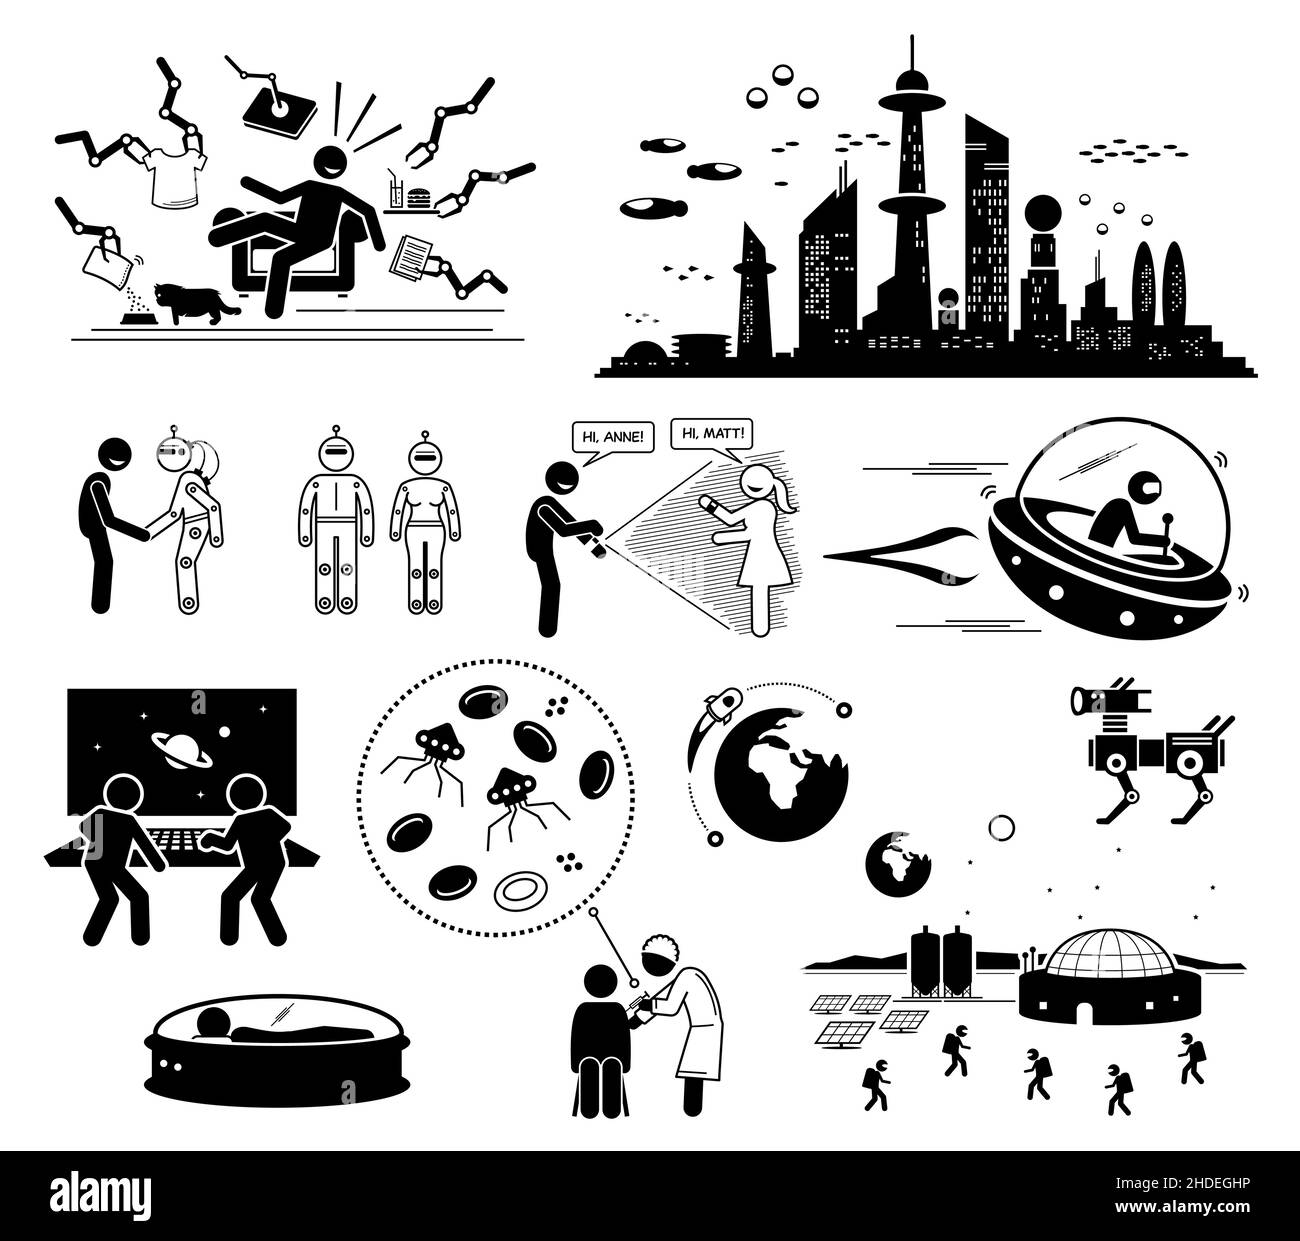 Futuristic World Science Fiction. Le illustrazioni vettoriali raffigurano tecnologie e scene umane nel lontano futuro. Illustrazione Vettoriale